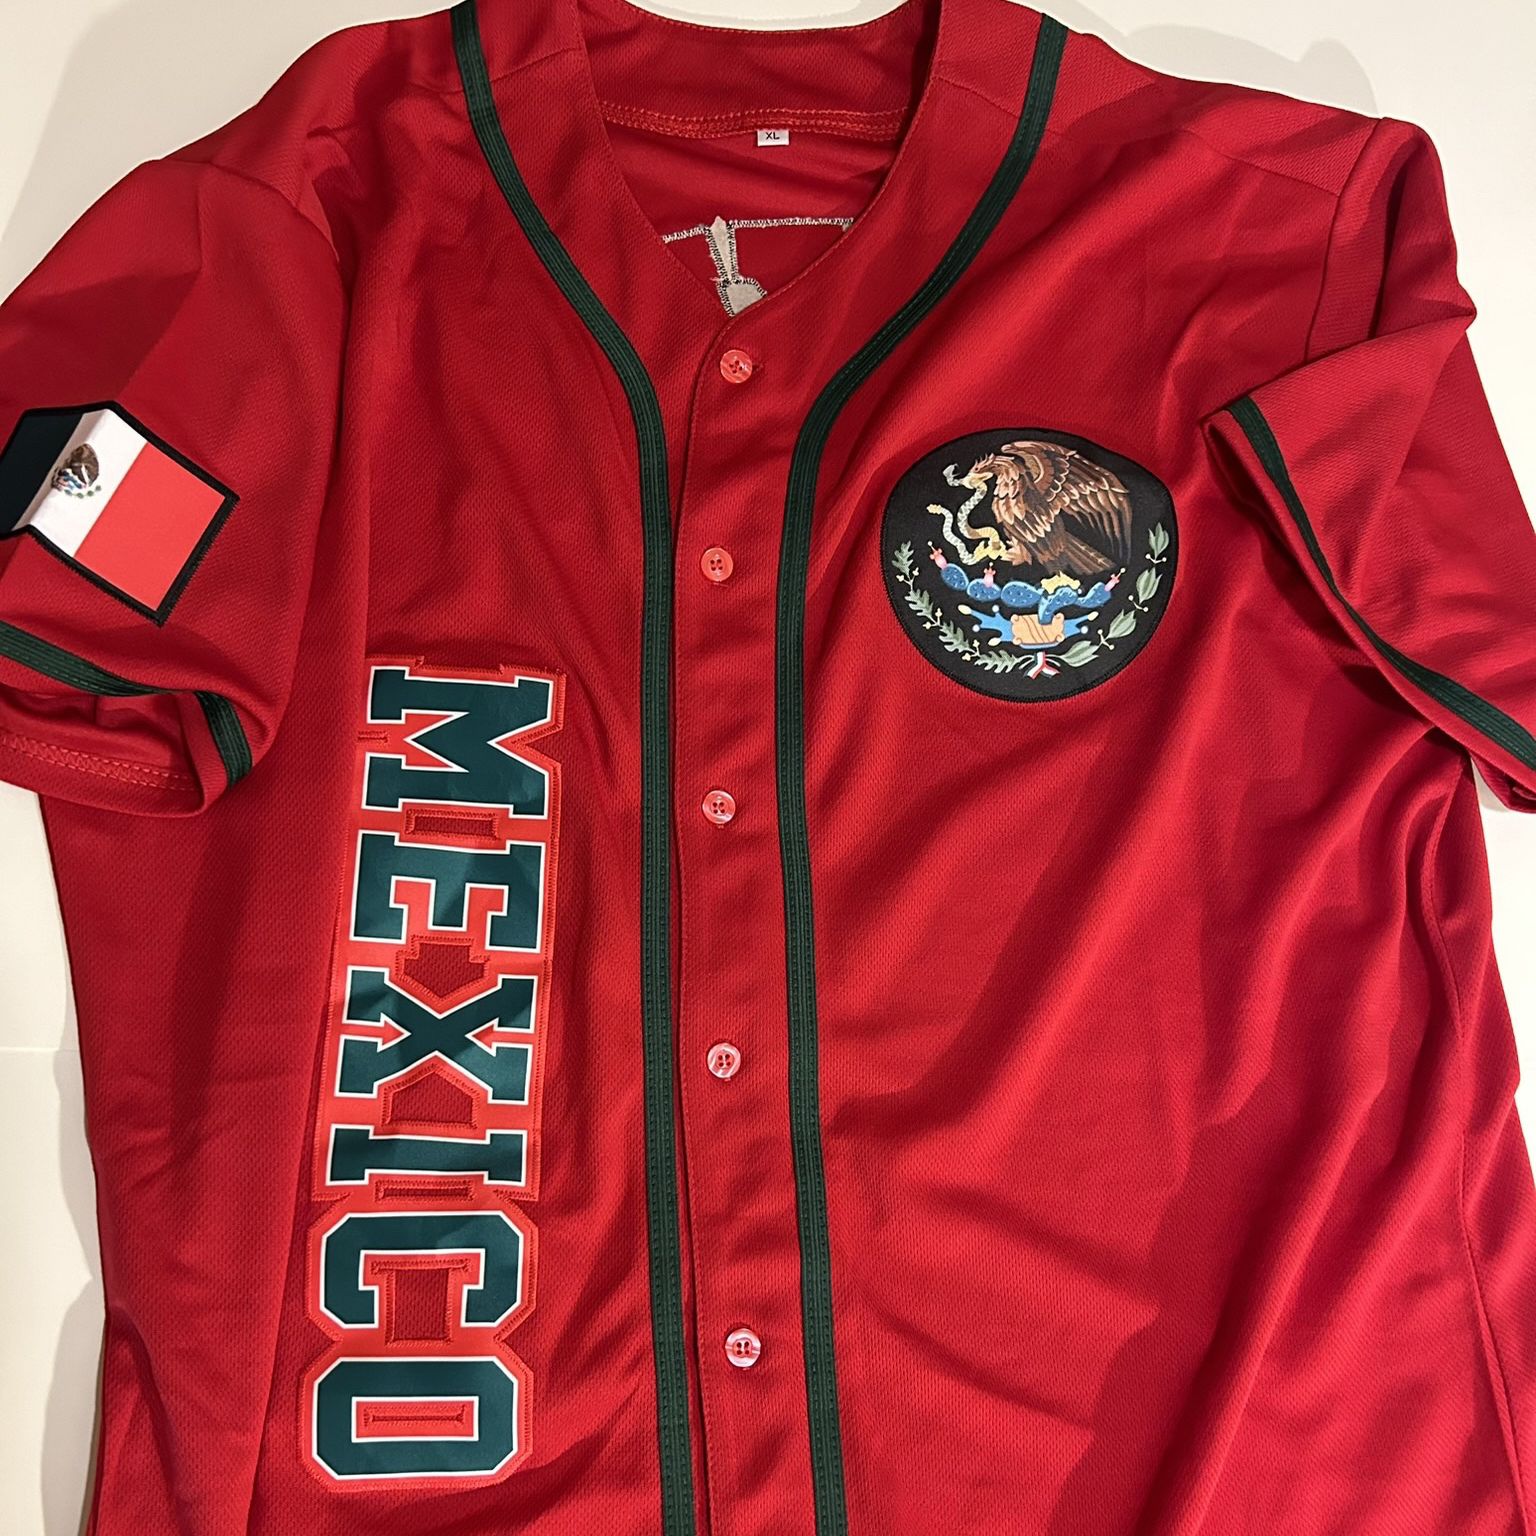 Mexico baseball jersey V-neck short sleeves